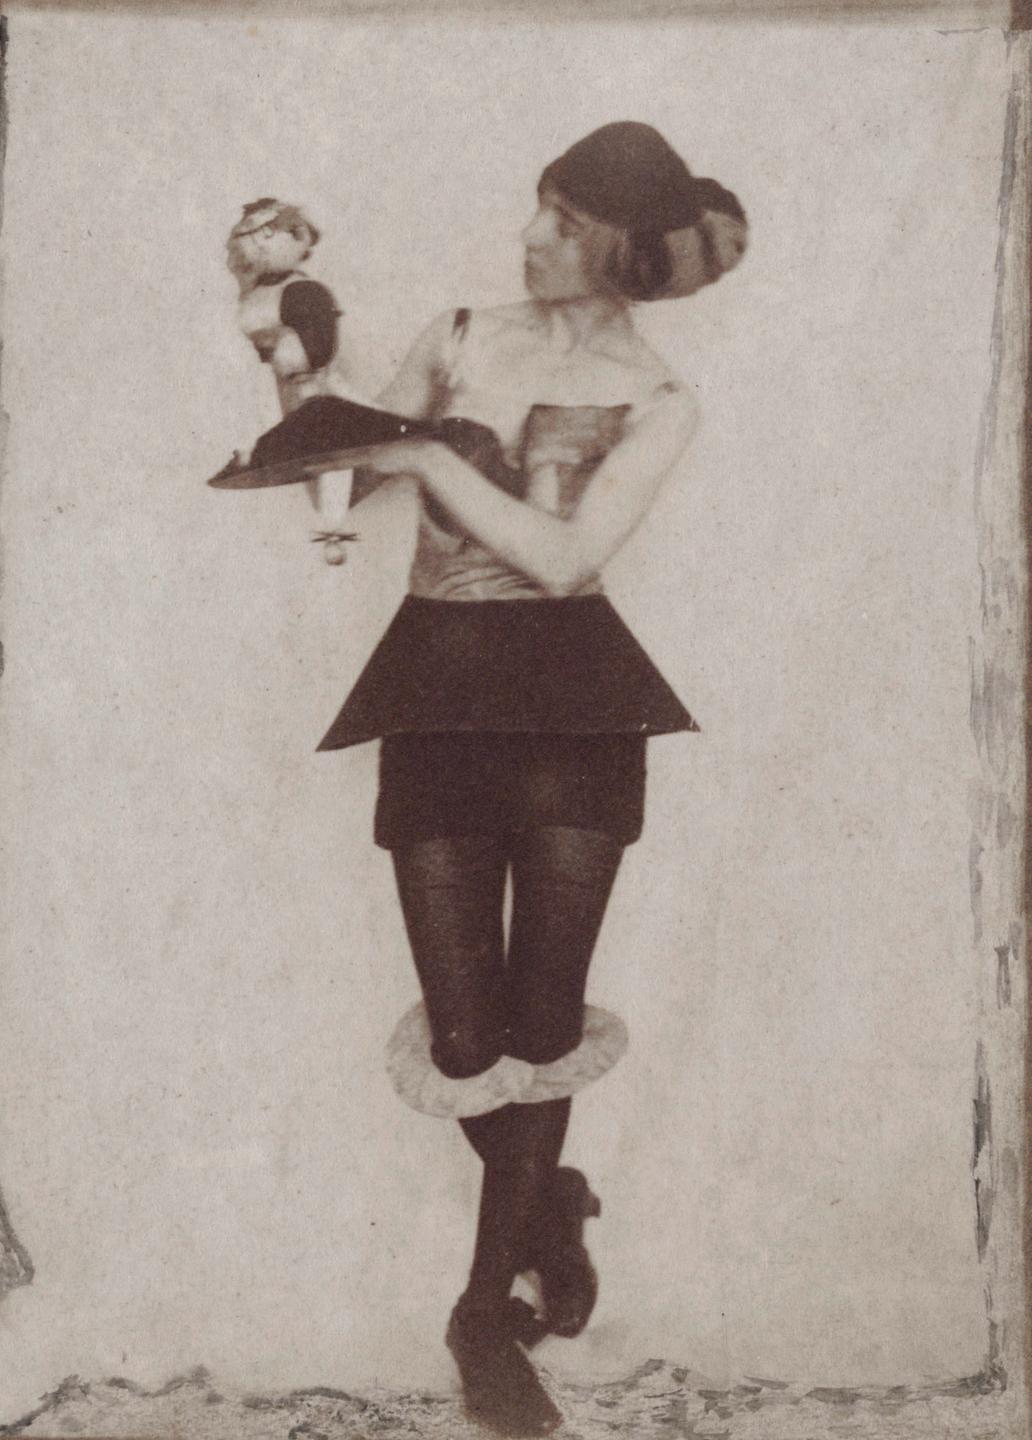 Die Dada-Künstlerin Hannah Höch als Figurine mit einer ihrer Dada-Puppen, um 1920